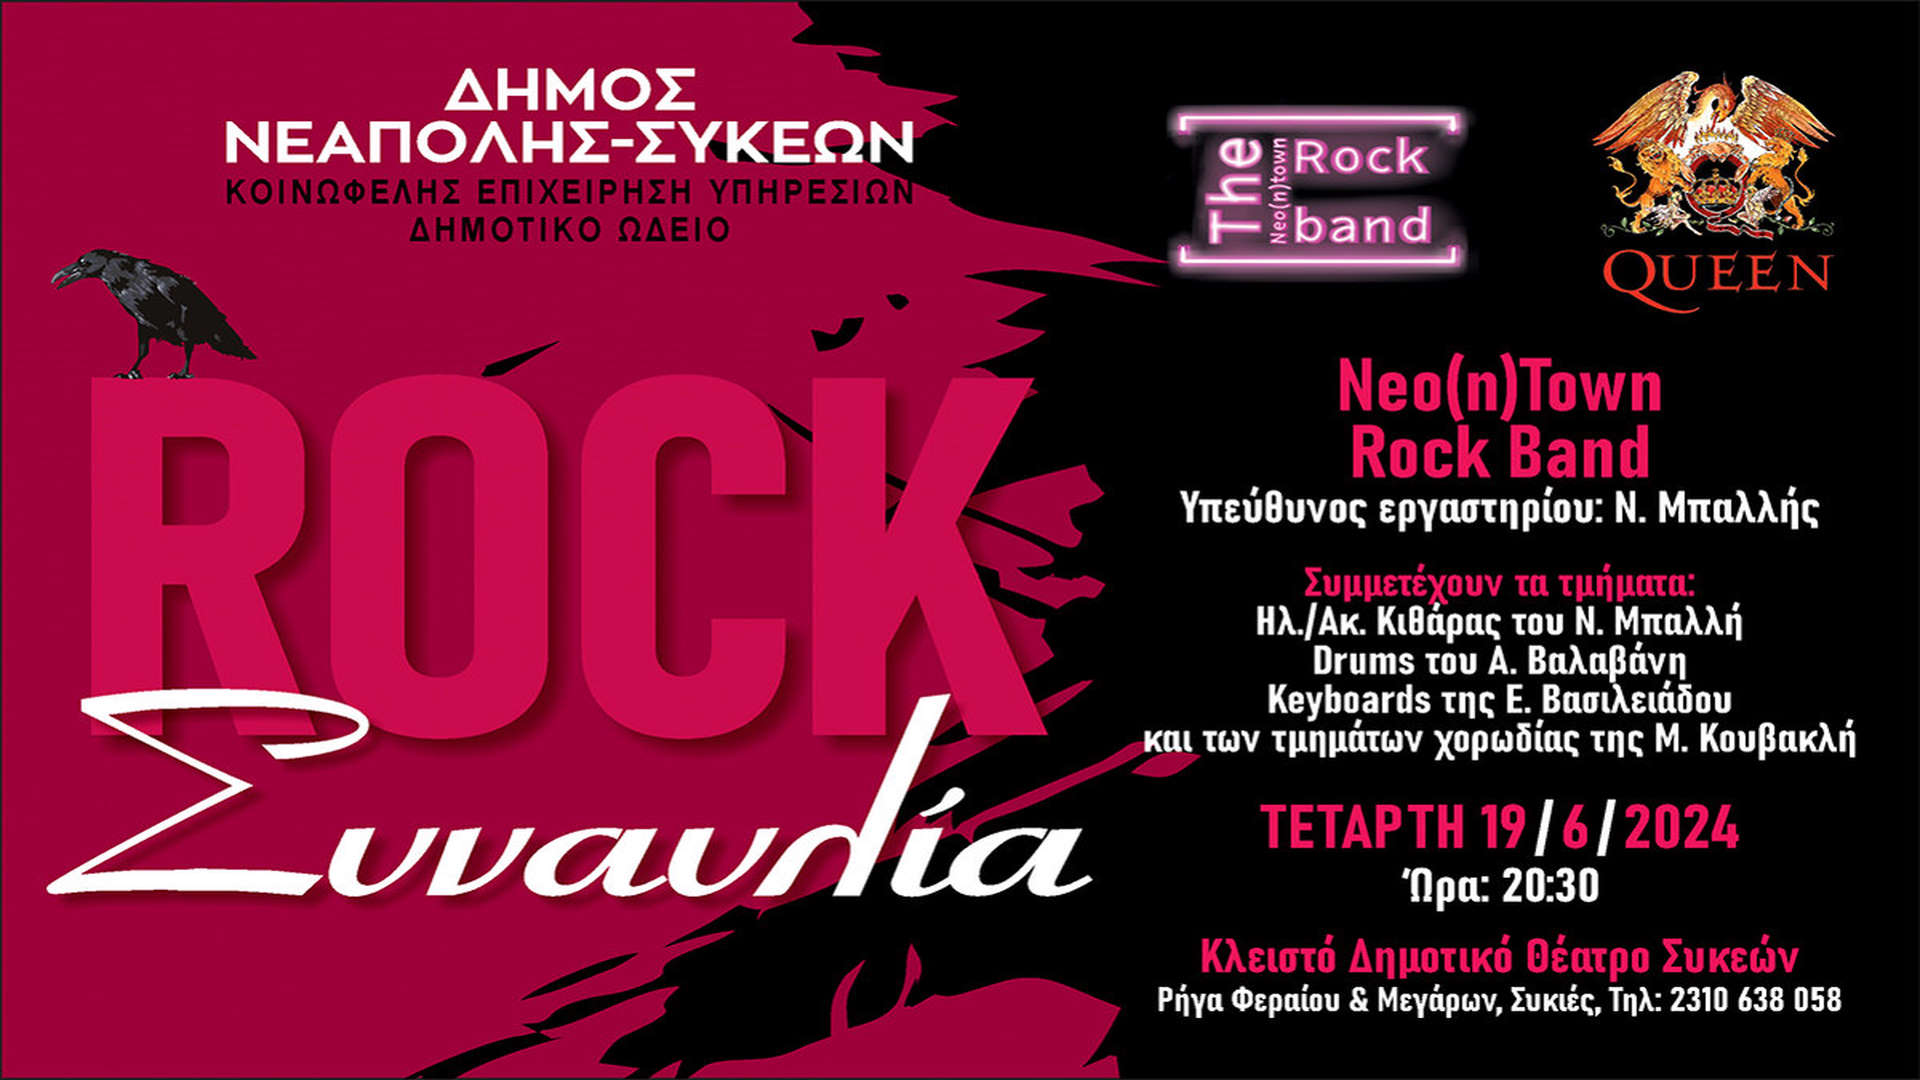 Ροκ συναυλία αύριο από το Δημοτικό Ωδείο Νεάπολης-Συκεών με ελεύθερη είσοδο 